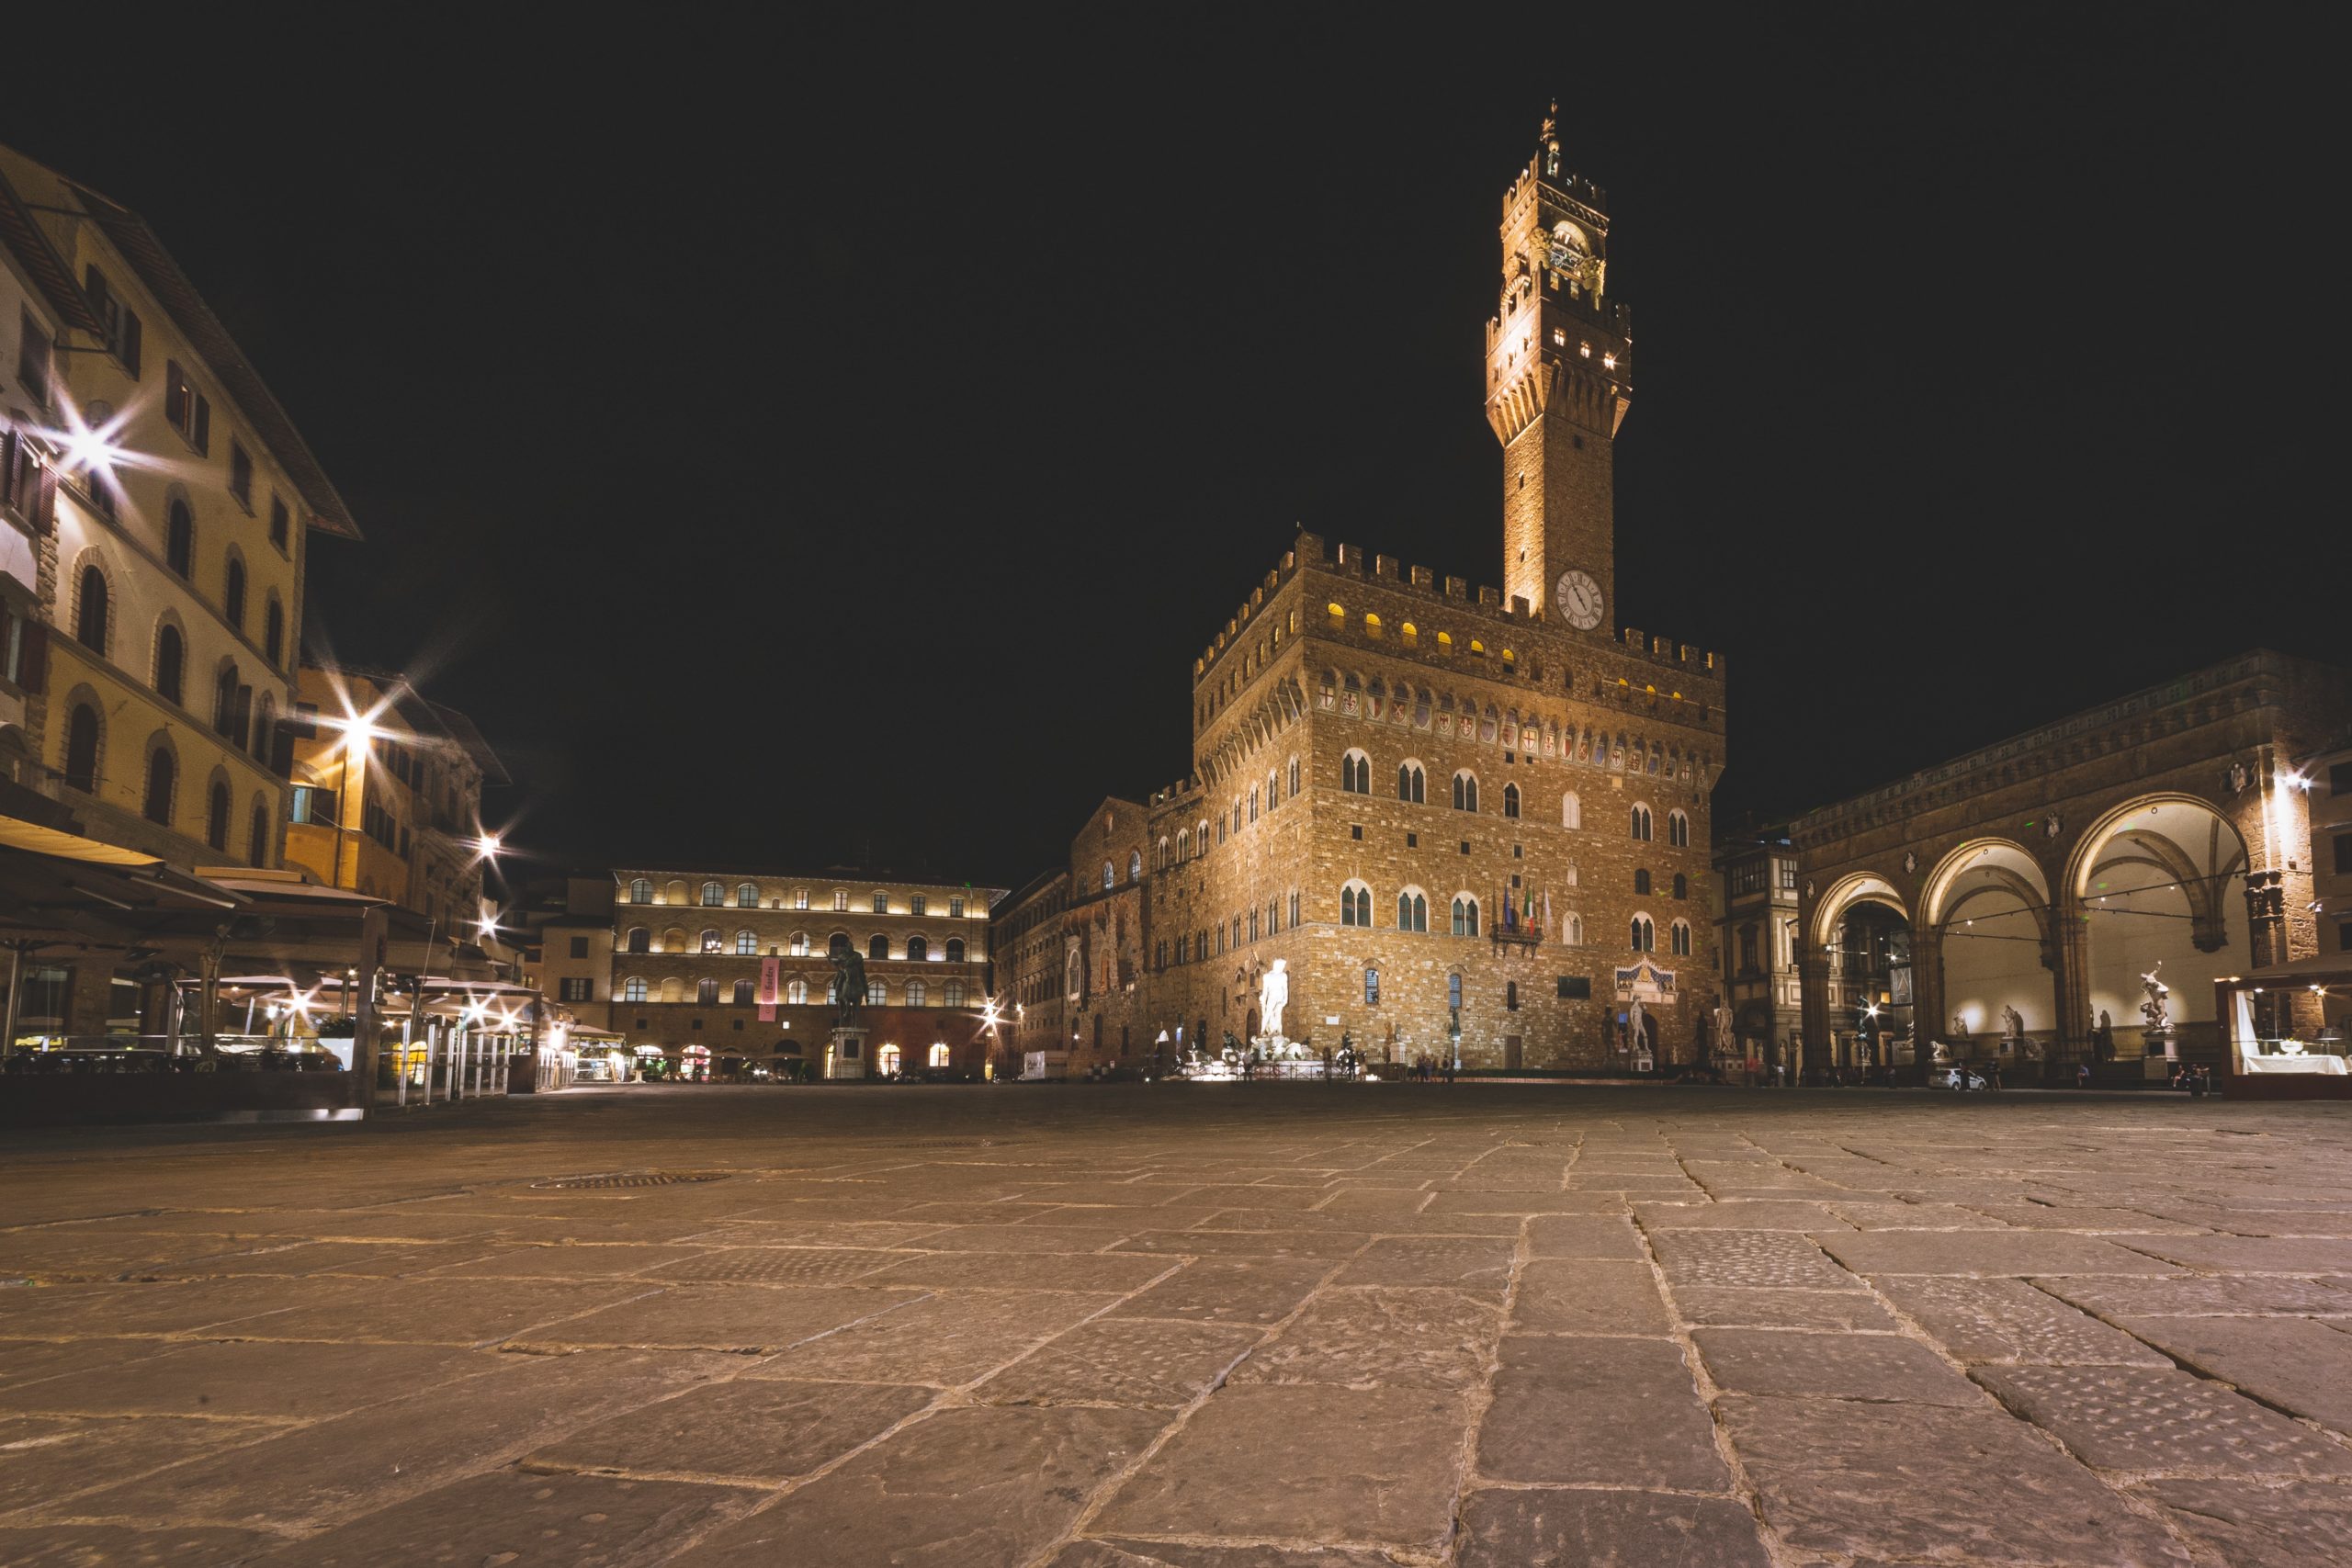 Piazza della Signoria - Photo by Matteo Kutufa